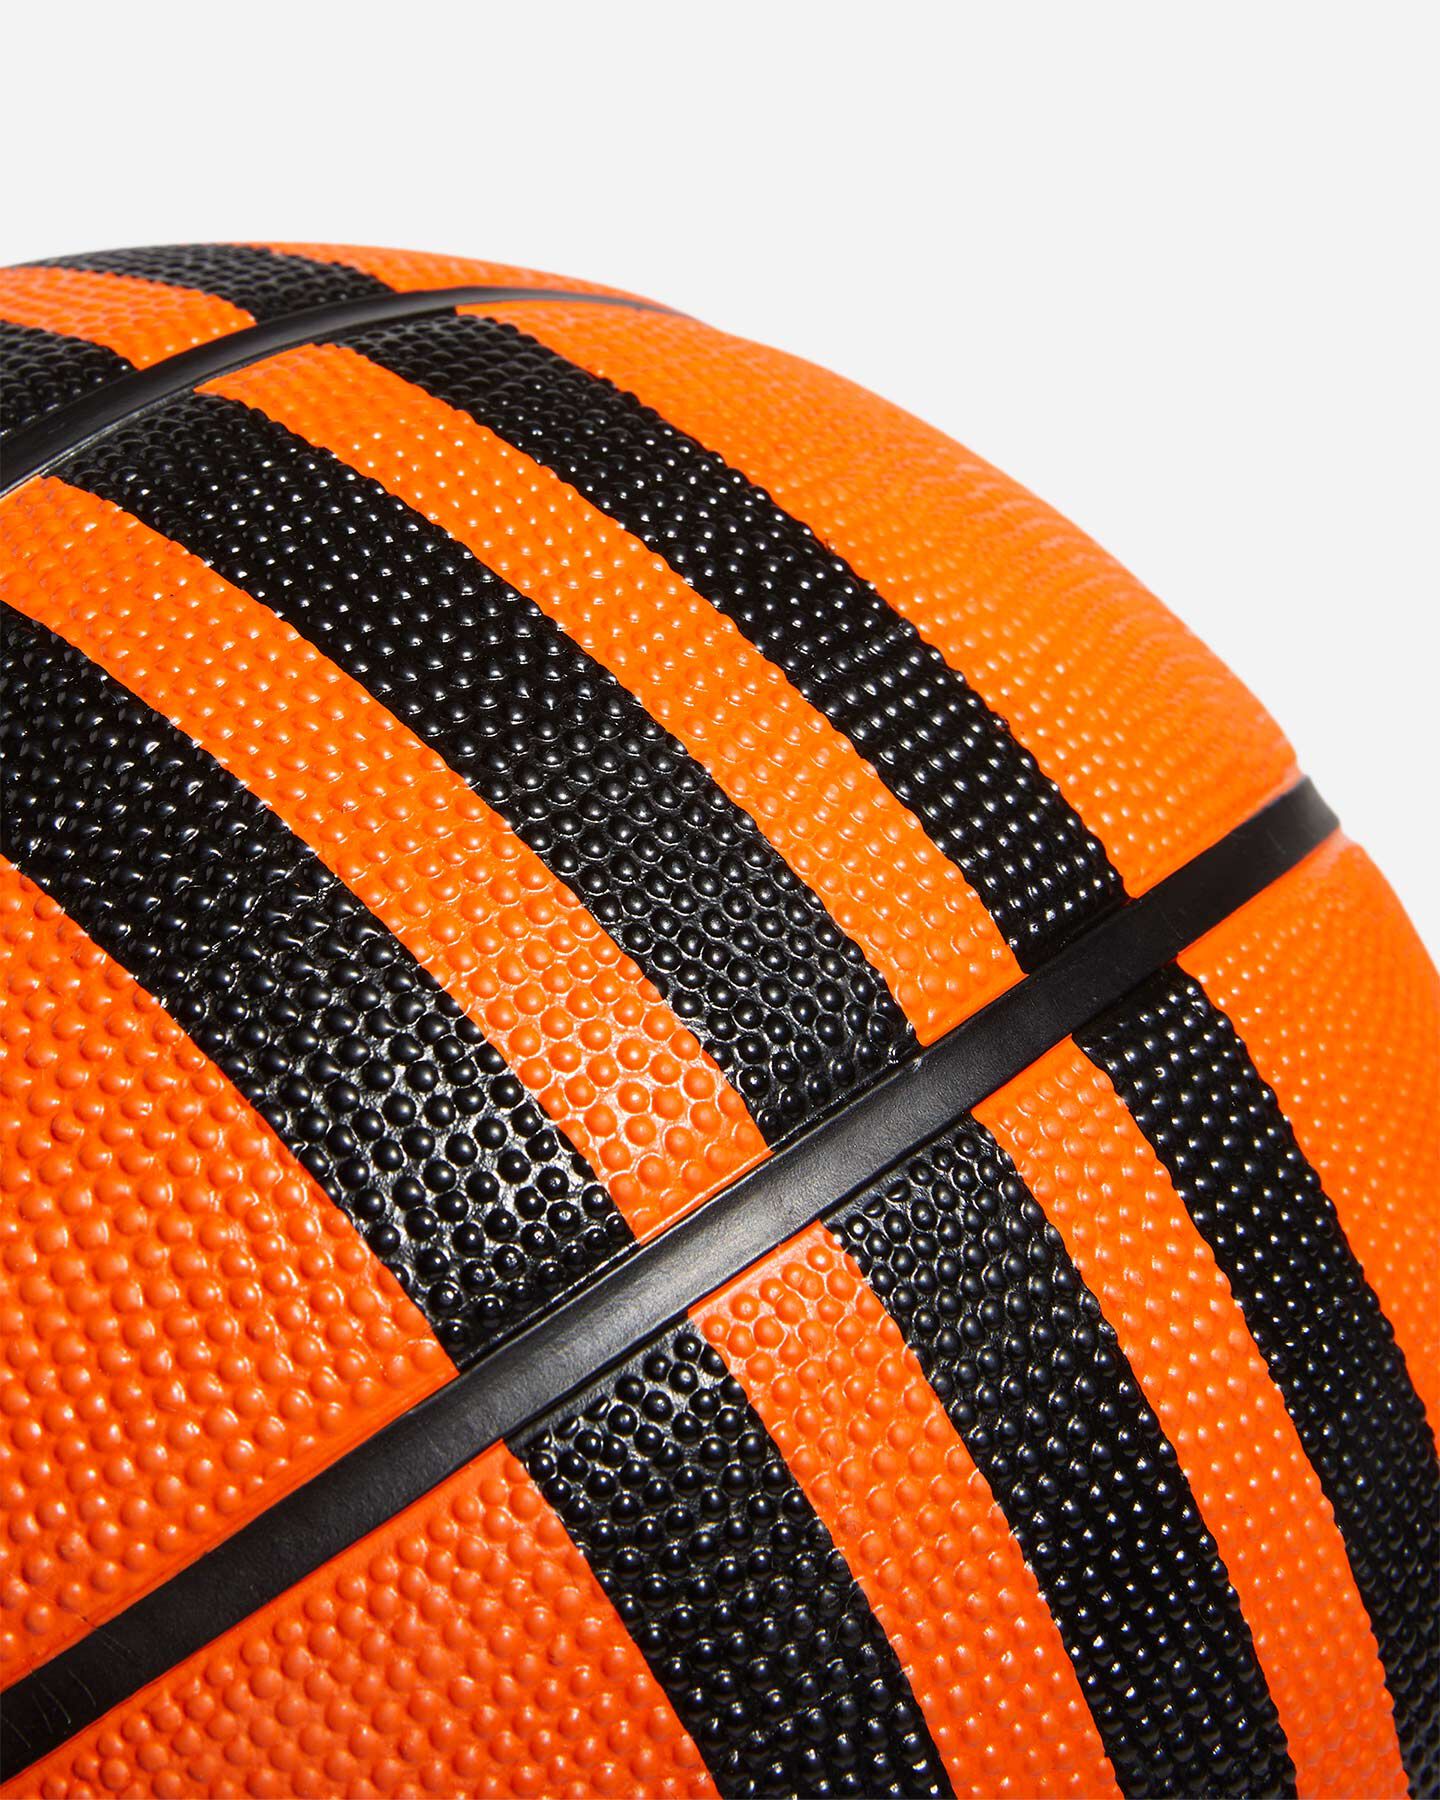  Pallone basket ADIDAS 3S RUBBER X3  S5467081|UNI|6 scatto 3